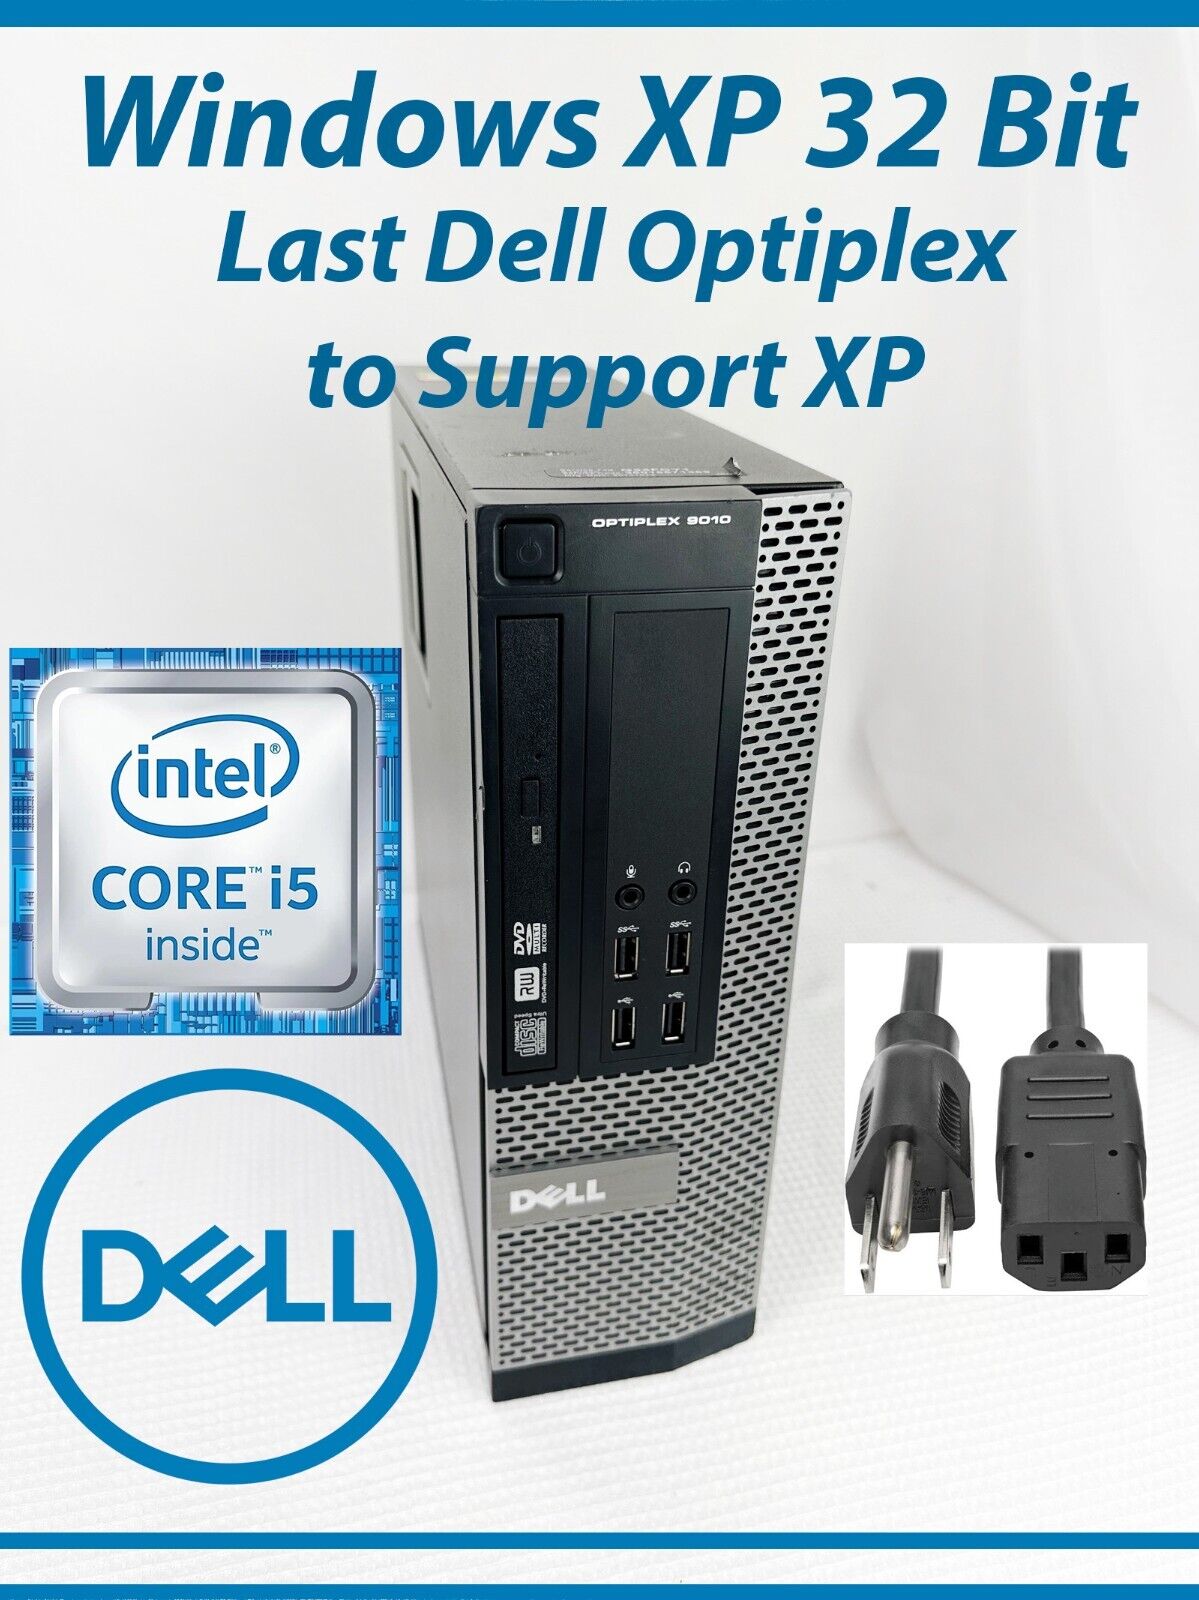 Dell OptiPlex 9010 SFF Intel i5 @ 3.20GHz 4GB Ram, 240GB SSD, Windows XP 32 Bit